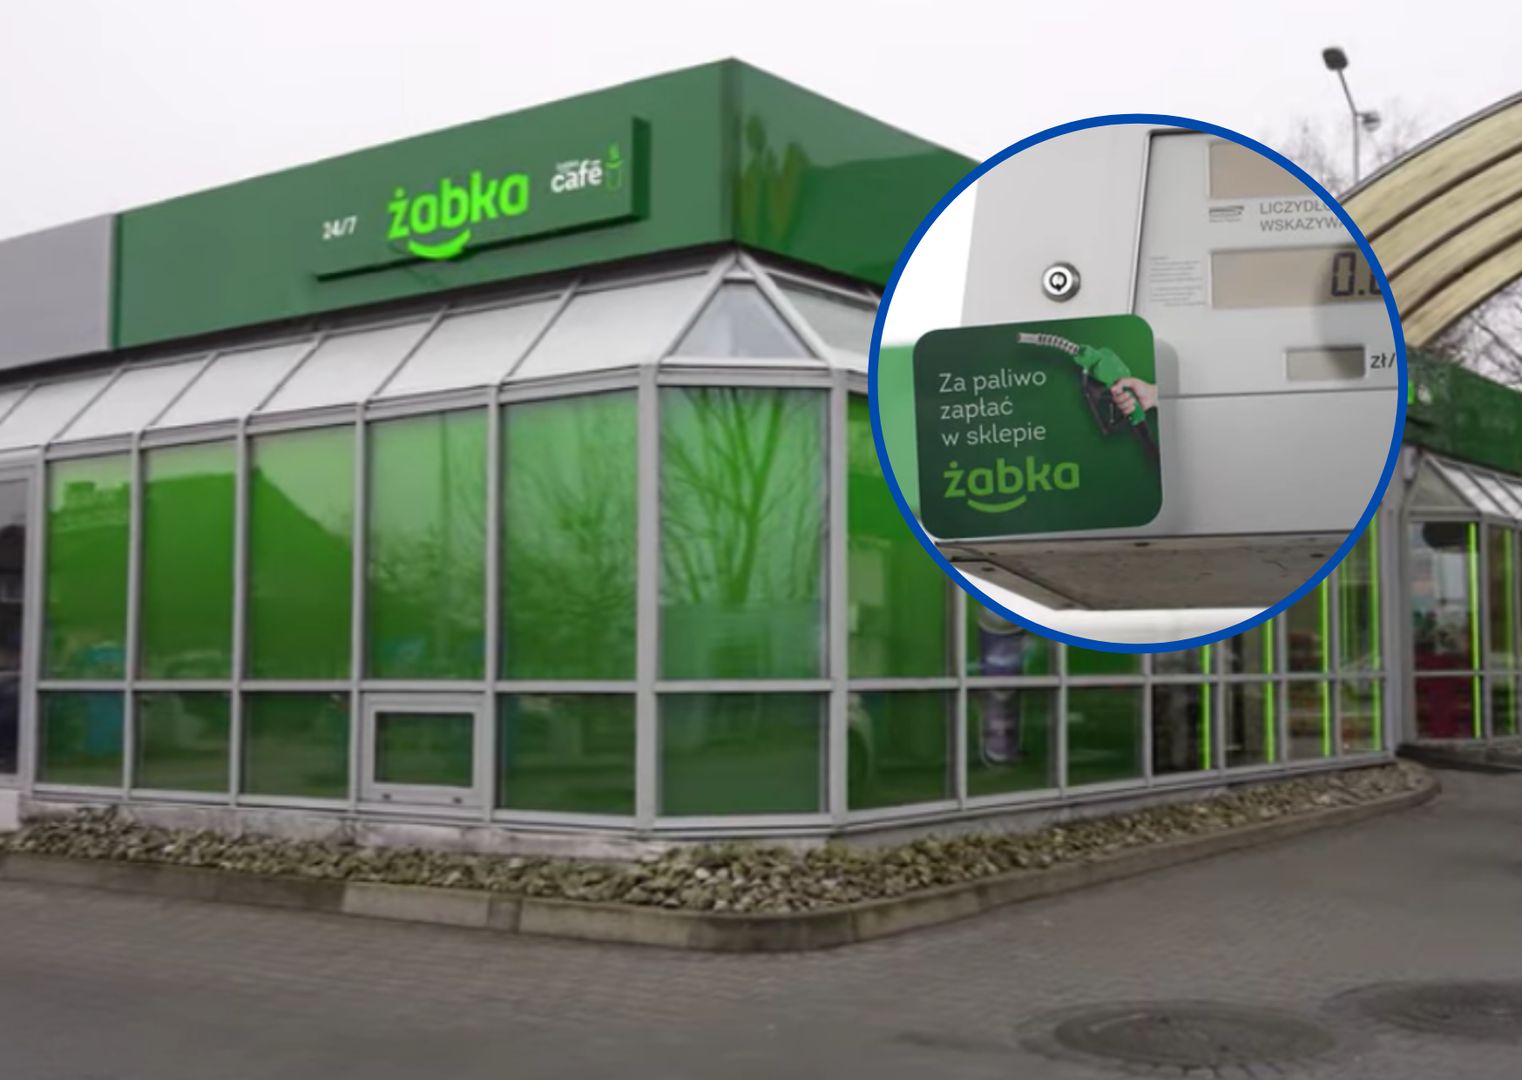 Stacja "Żabka" otworzyła się w Opolu. Youtuber sprawdził, po ile benzyna